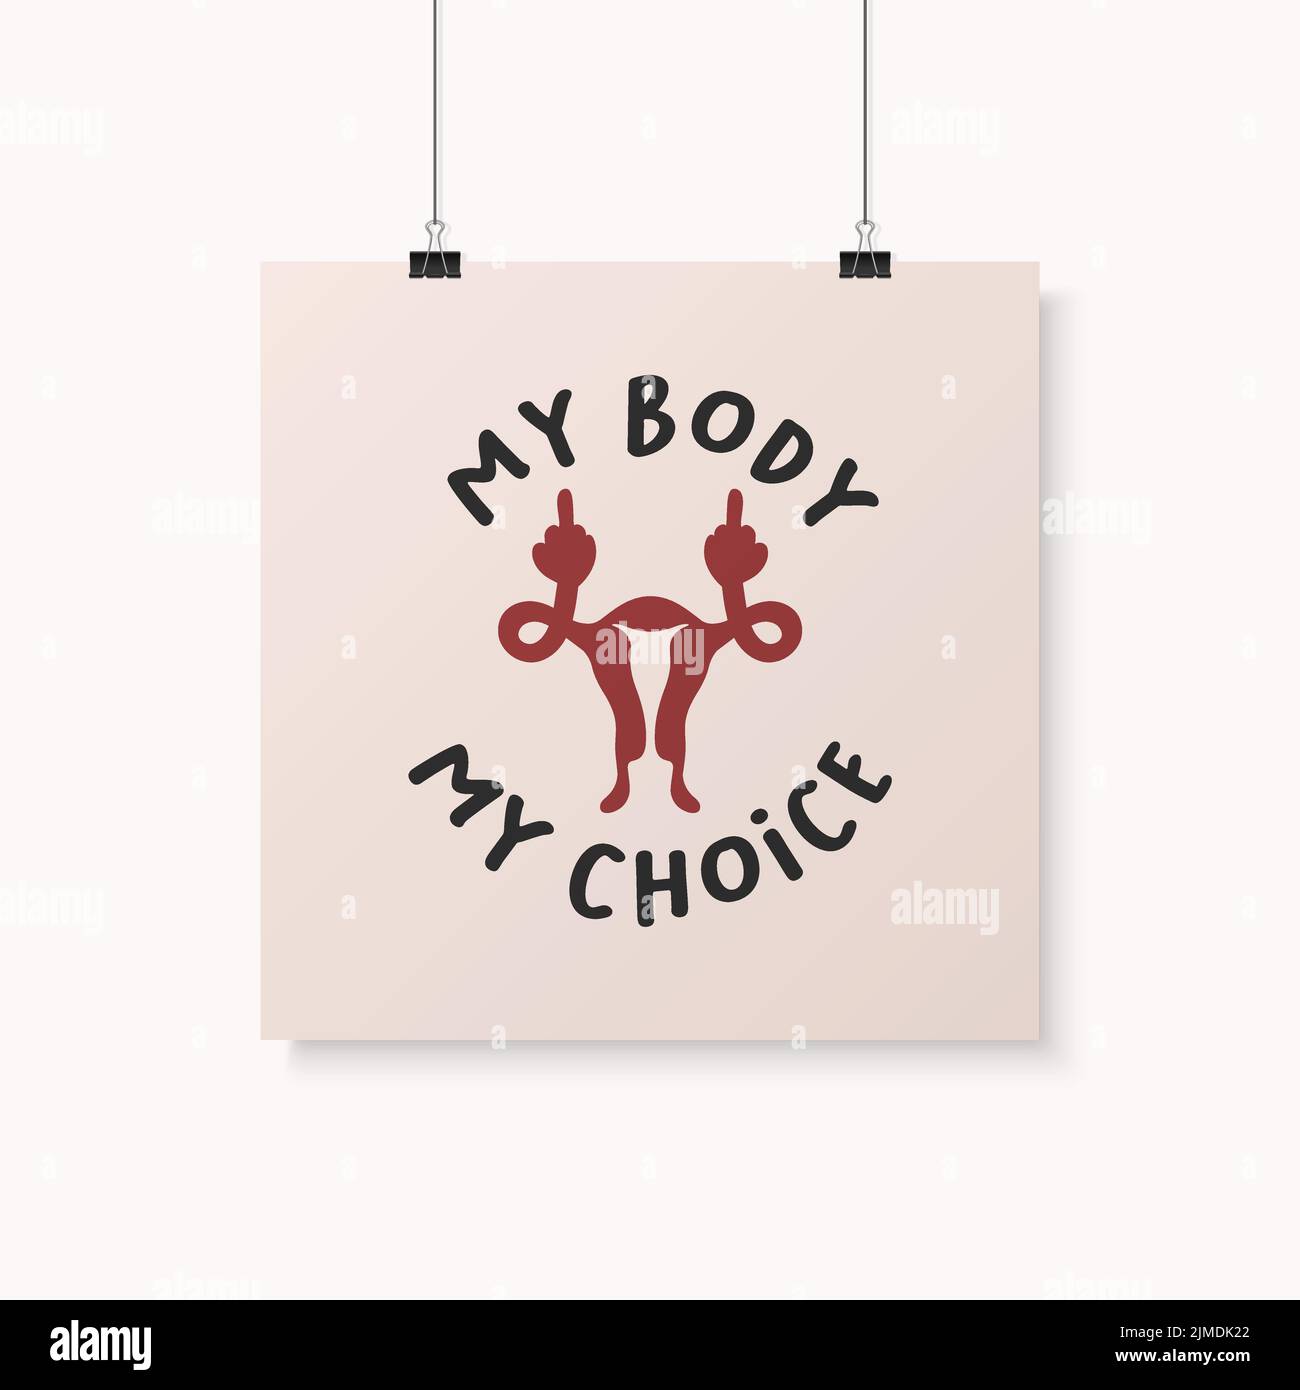 Mein Körper Meine Wahl Zeichen. Wome s Rights Poster, das nach dem Verbot von Abtreibungen weiterhin den Zugang zu Abtreibungen fordert, Roe vs Wade. Protest, Feminismus Stock Vektor